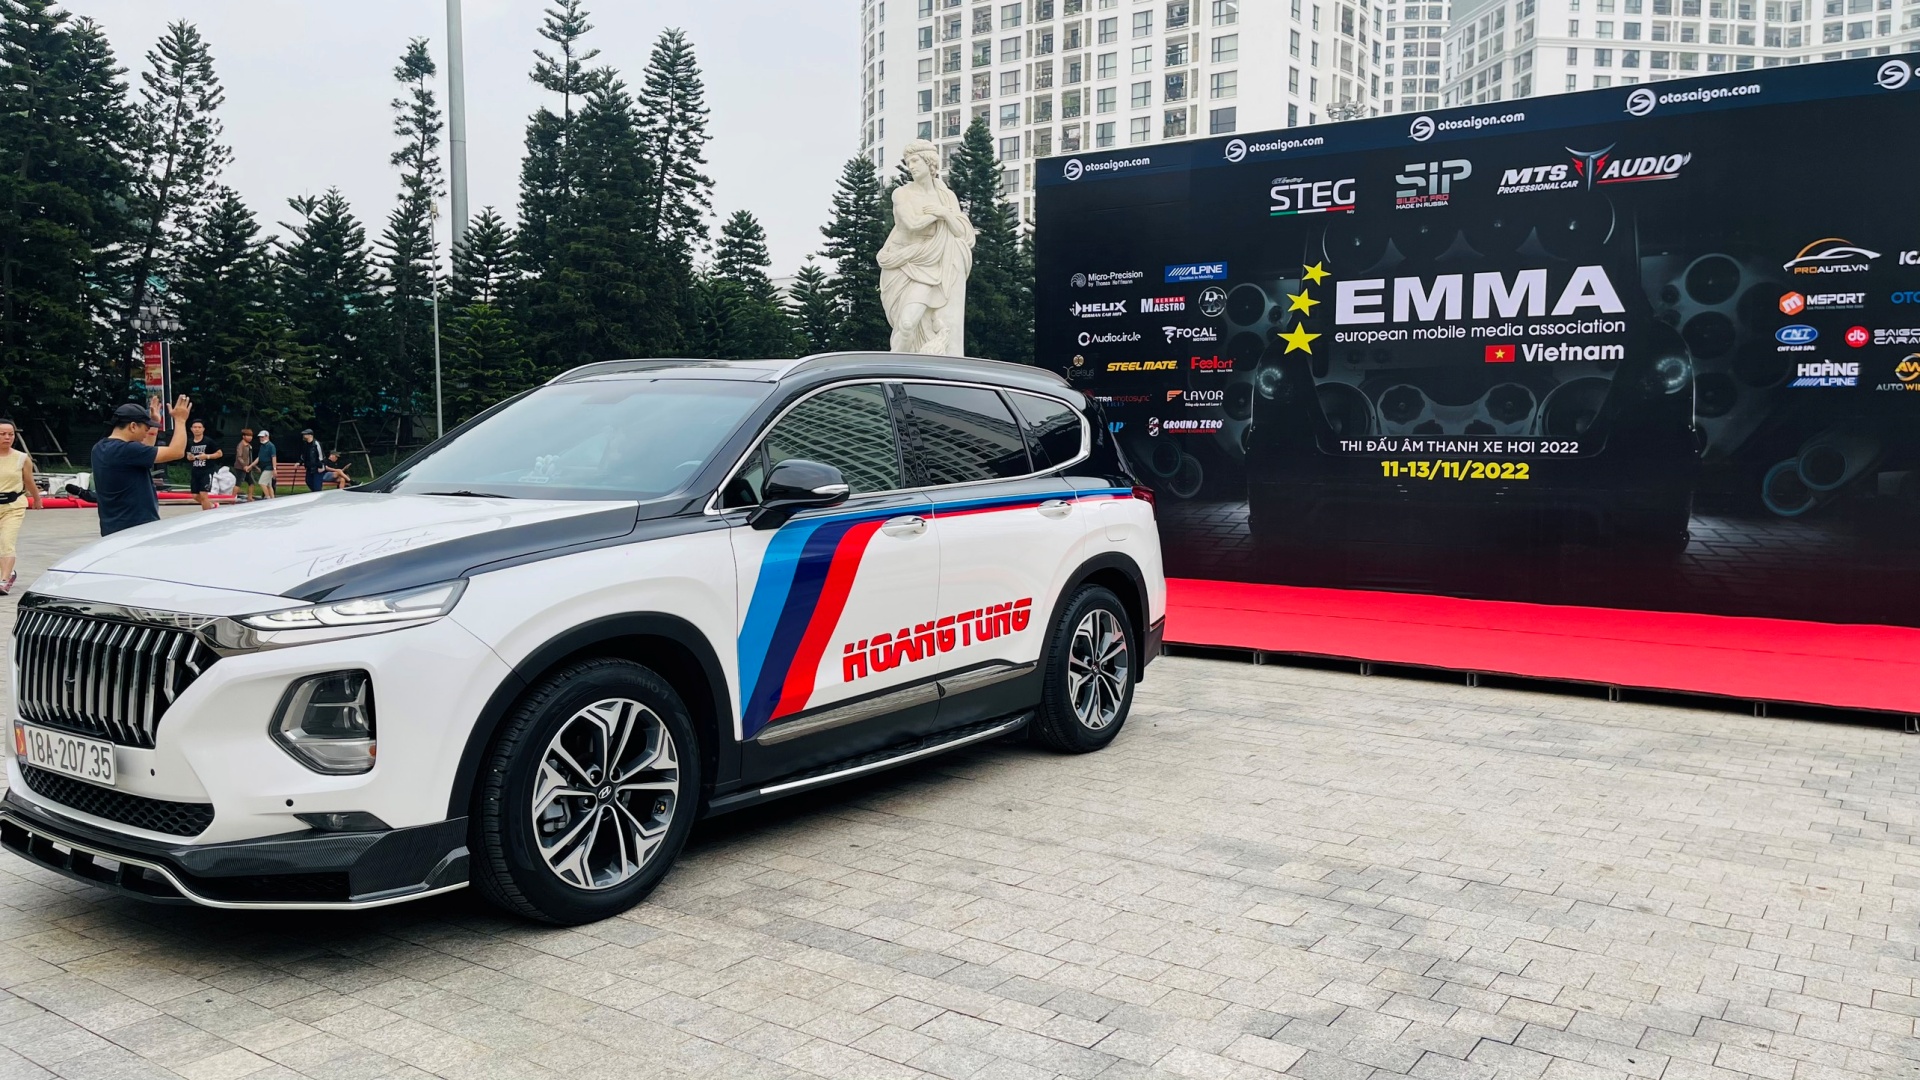 Nội thất ô tô Hoàng Tùng – Tân binh từ Nam Định đầy hứa hẹn tại EMMA Miền Bắc 2022 - 1